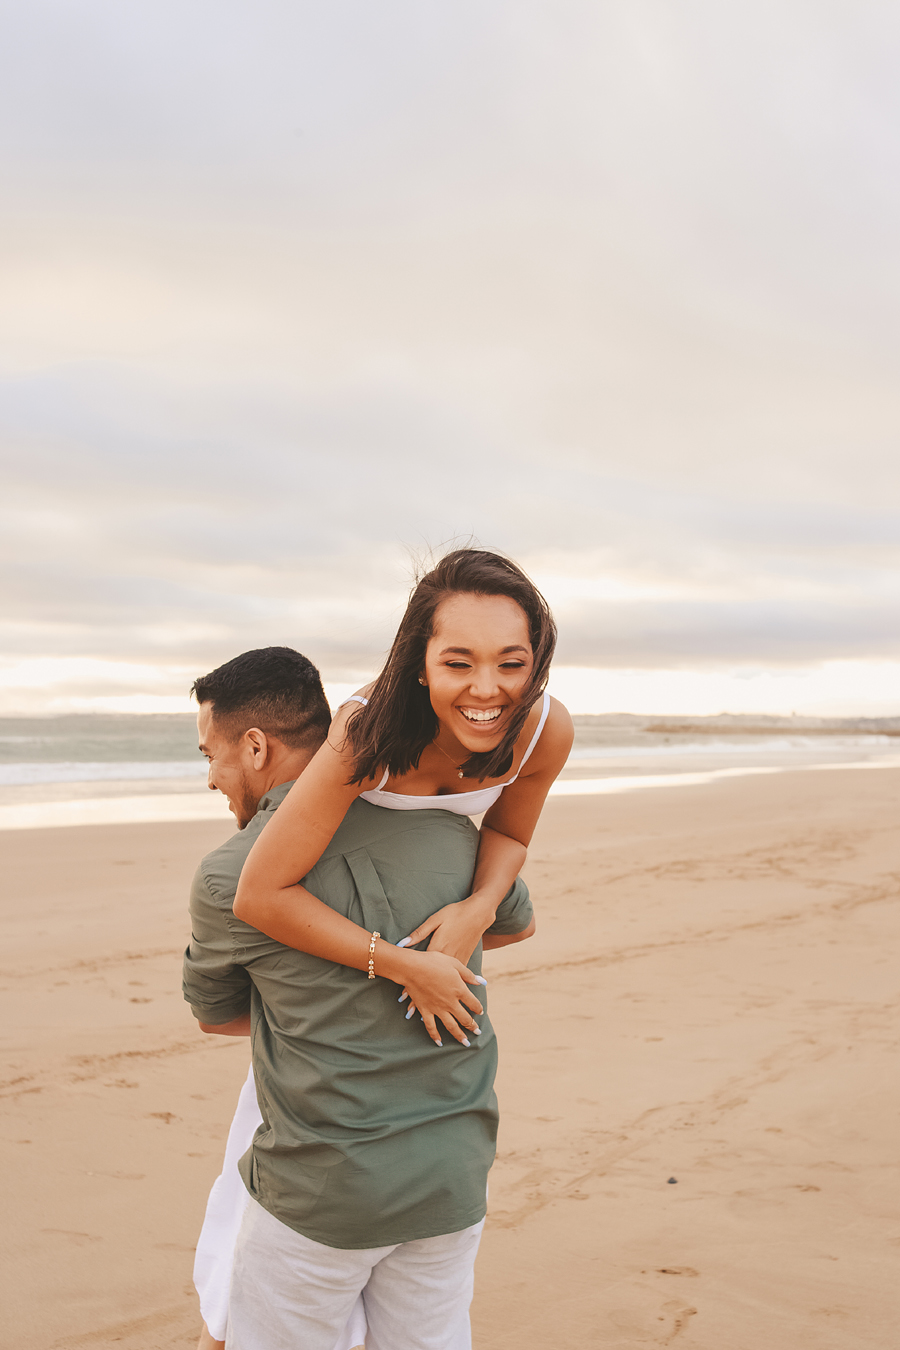 Best Couples Photography Poses 2020 Ideas - 7SEM PAD | Fotos de noivado na  praia, Fotos de casamento na praia, Fotografia de casamento na praia